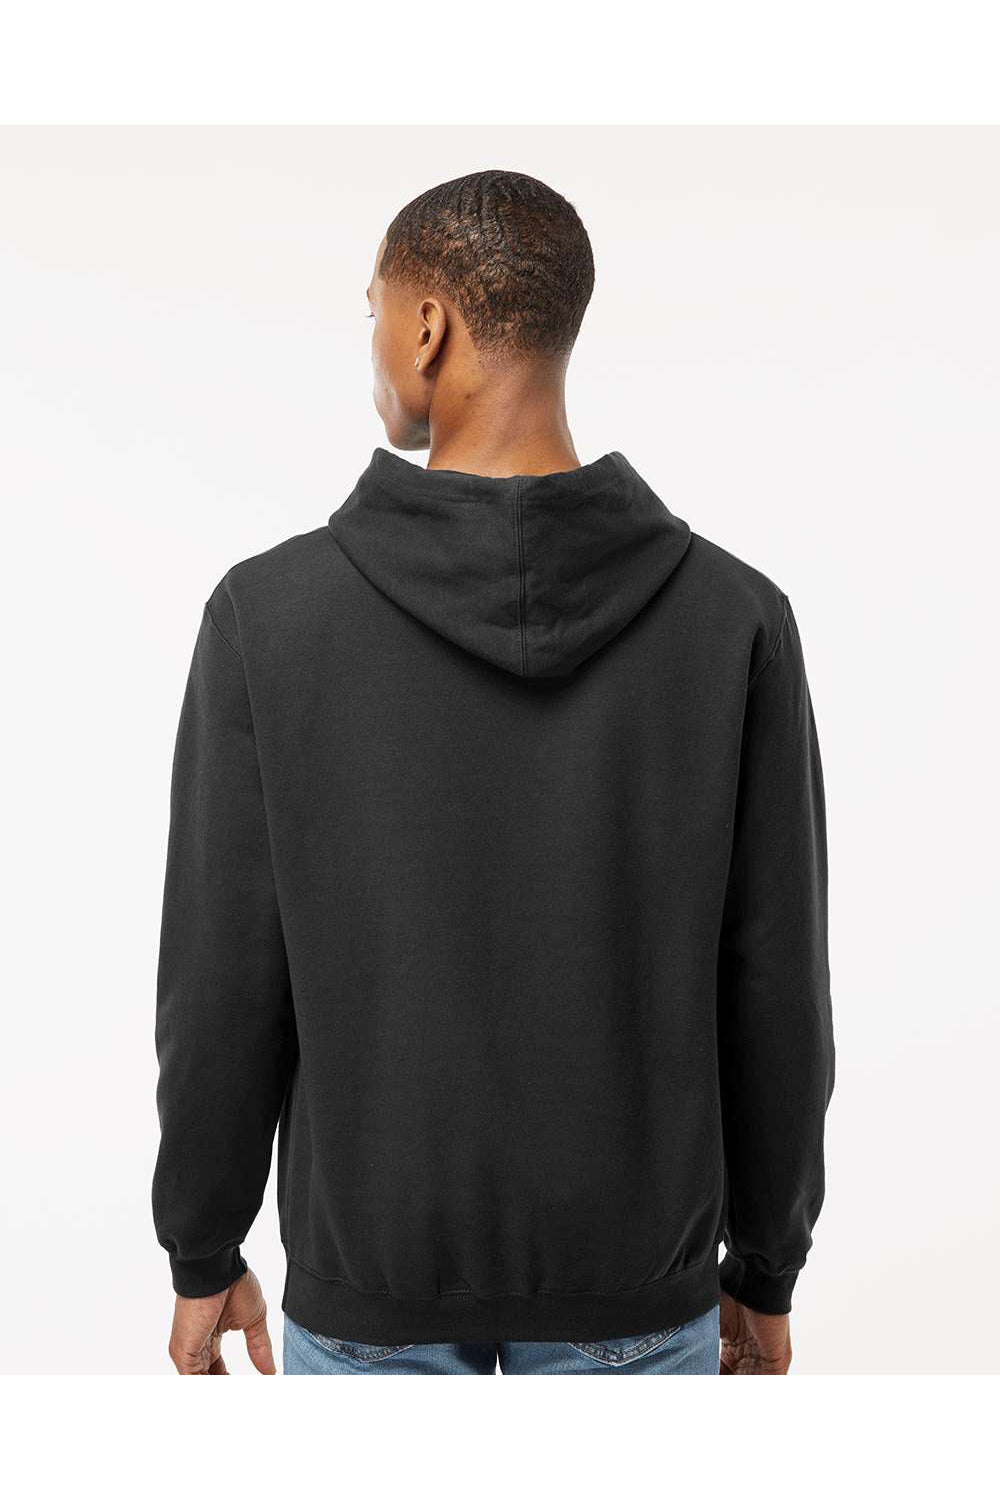 Tultex 320 Mens Fleece Hooded Sweatshirt Hoodie Black Model Back